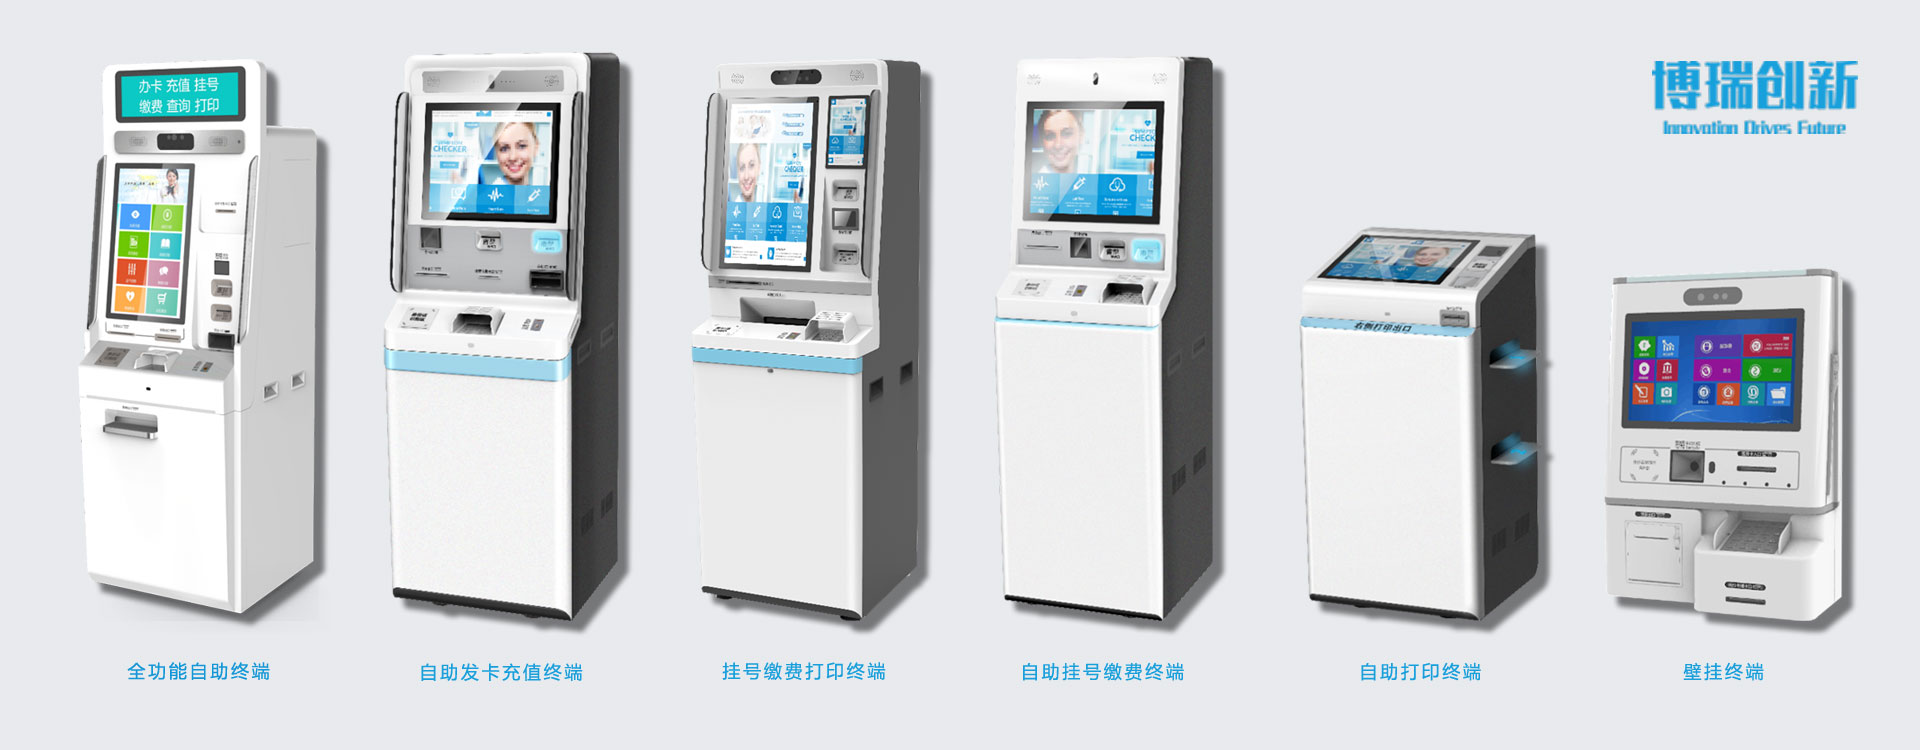 北京博瑞创新电子技术开发有限公司